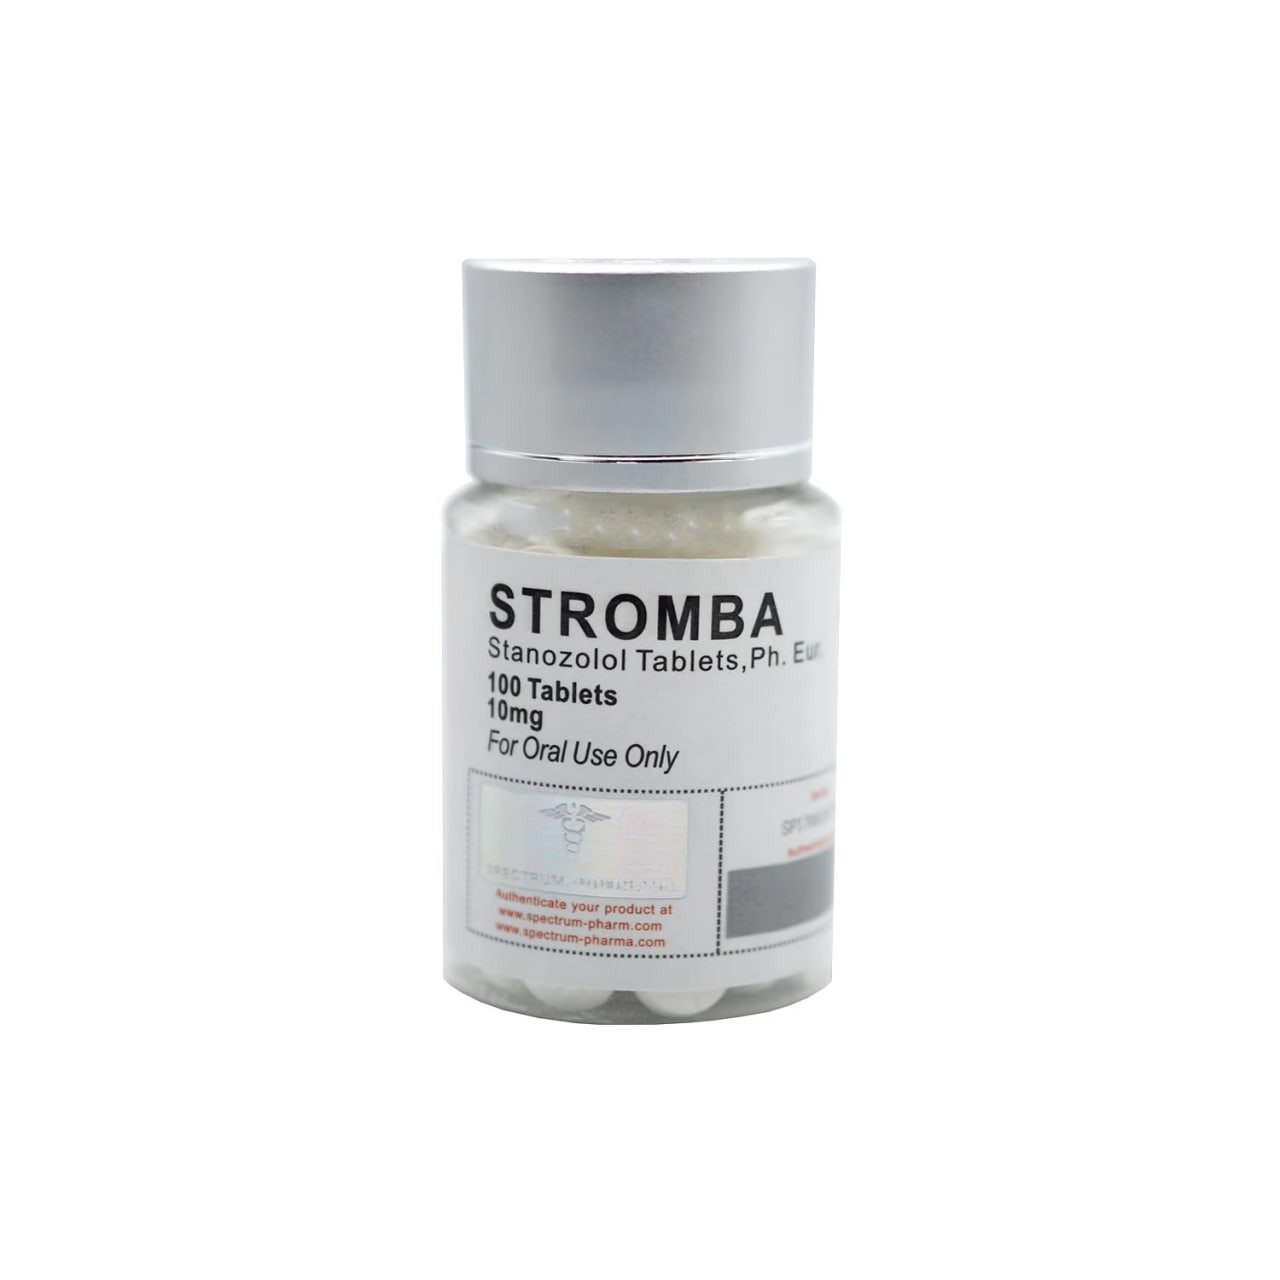 STROMBA Spectrum Pharma